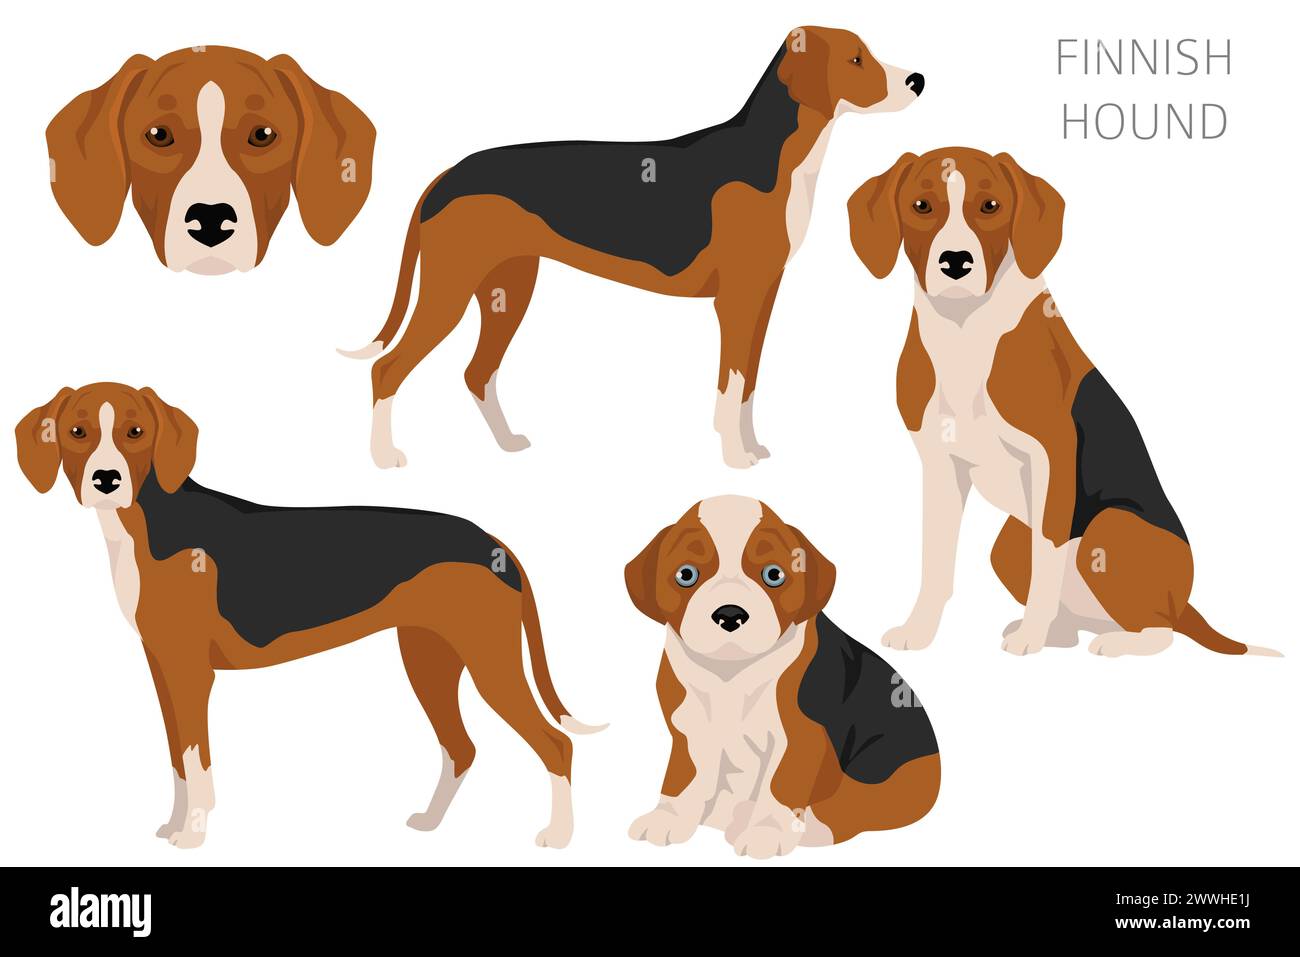 Clique de chien courant finlandais. Différentes couleurs de pelage. Illustration vectorielle Illustration de Vecteur